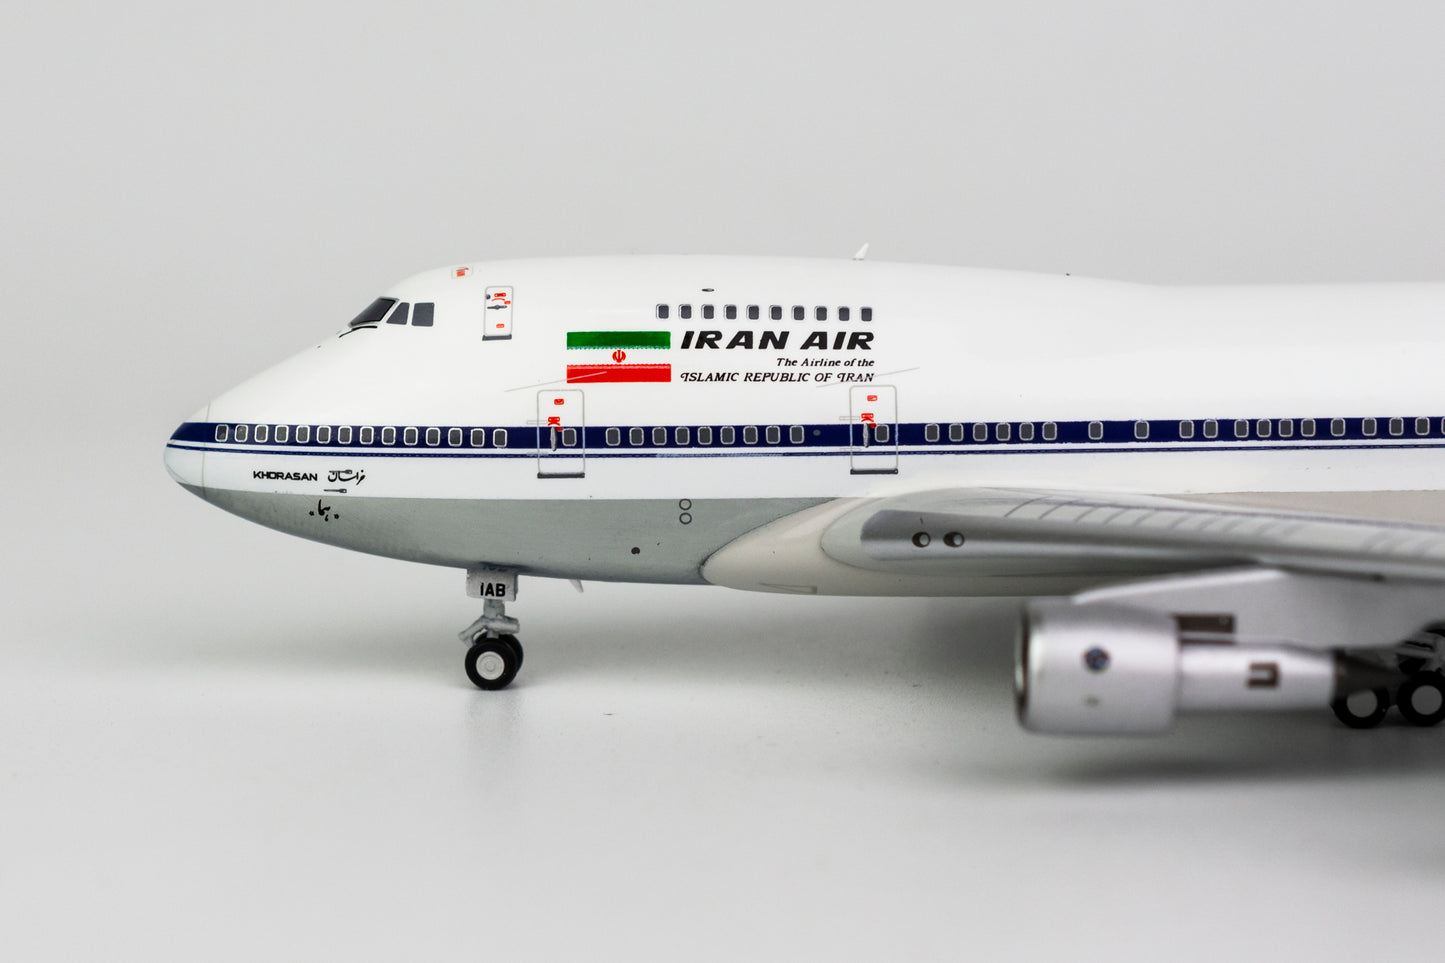 1:400 NG Models Iran Air Boeing 747SP "1980s Colors" EP-IAB 07002